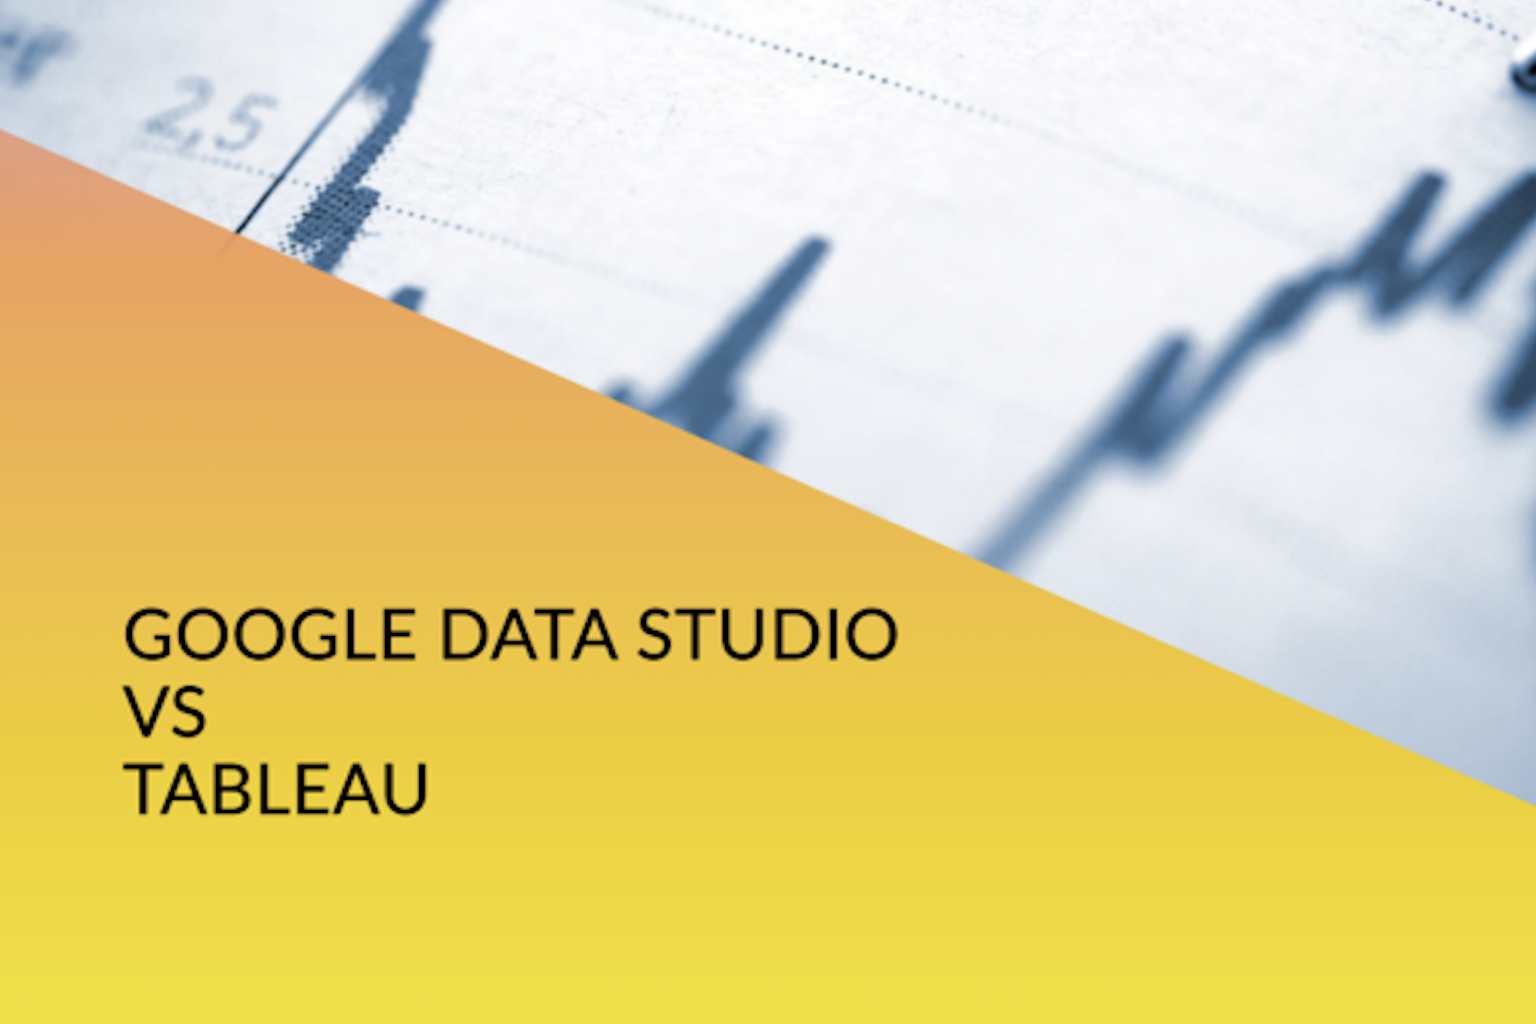 Google Data StudioとTableauの究極の比較を見つけてください。あなたのデータ可視化のニーズに最適なツールを見つけましょう。クリックして詳細を学びましょう！